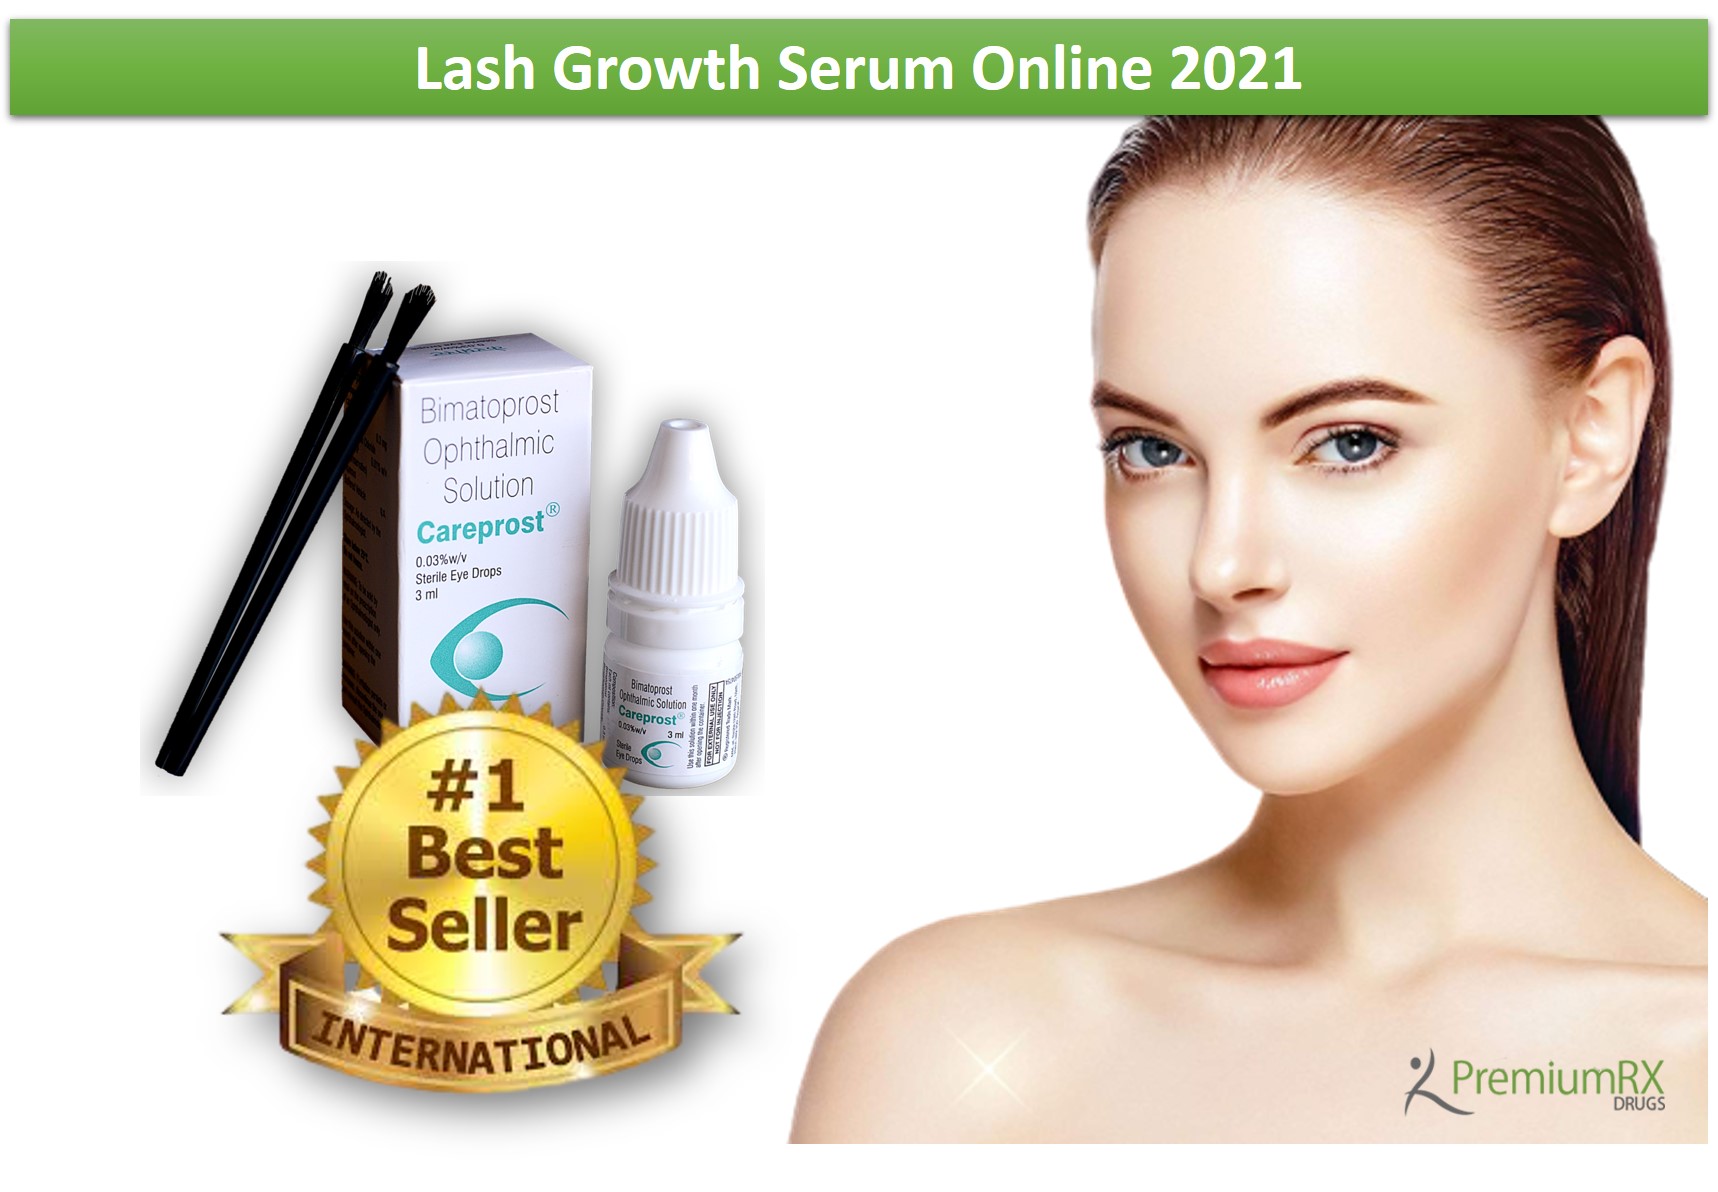 Lash growth serum online 2021